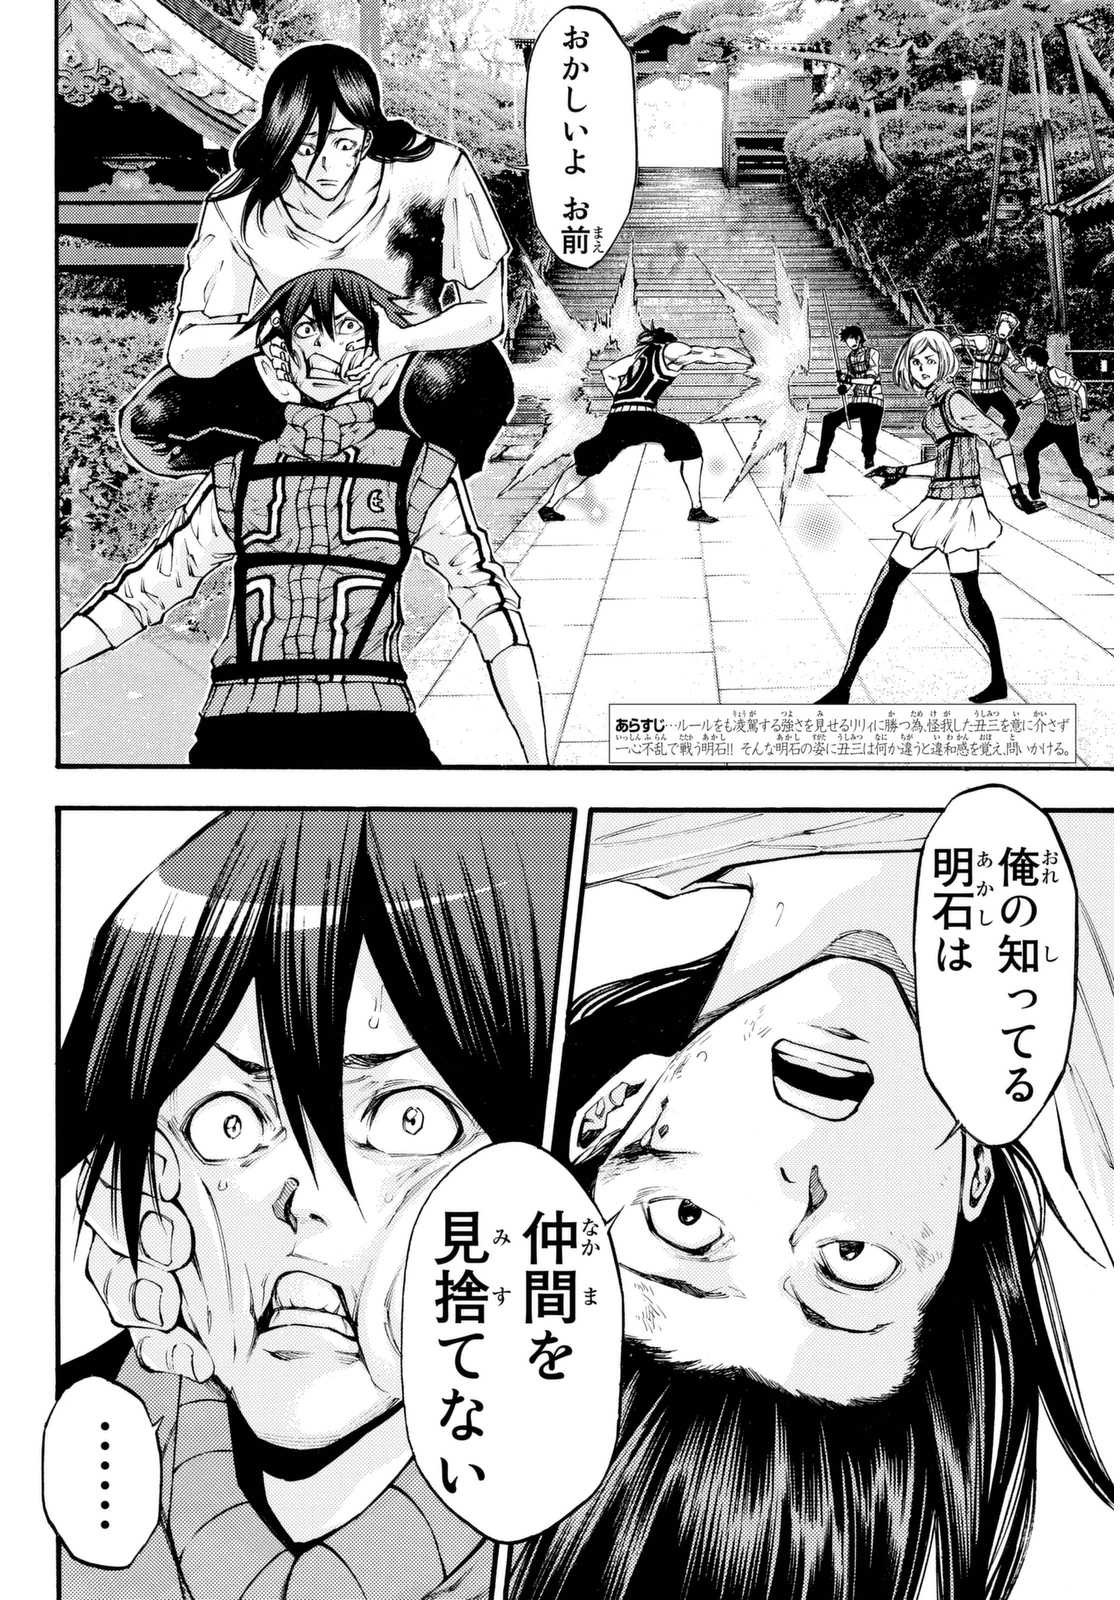 Kamisama no Ituori - Chapter 143 - Page 2